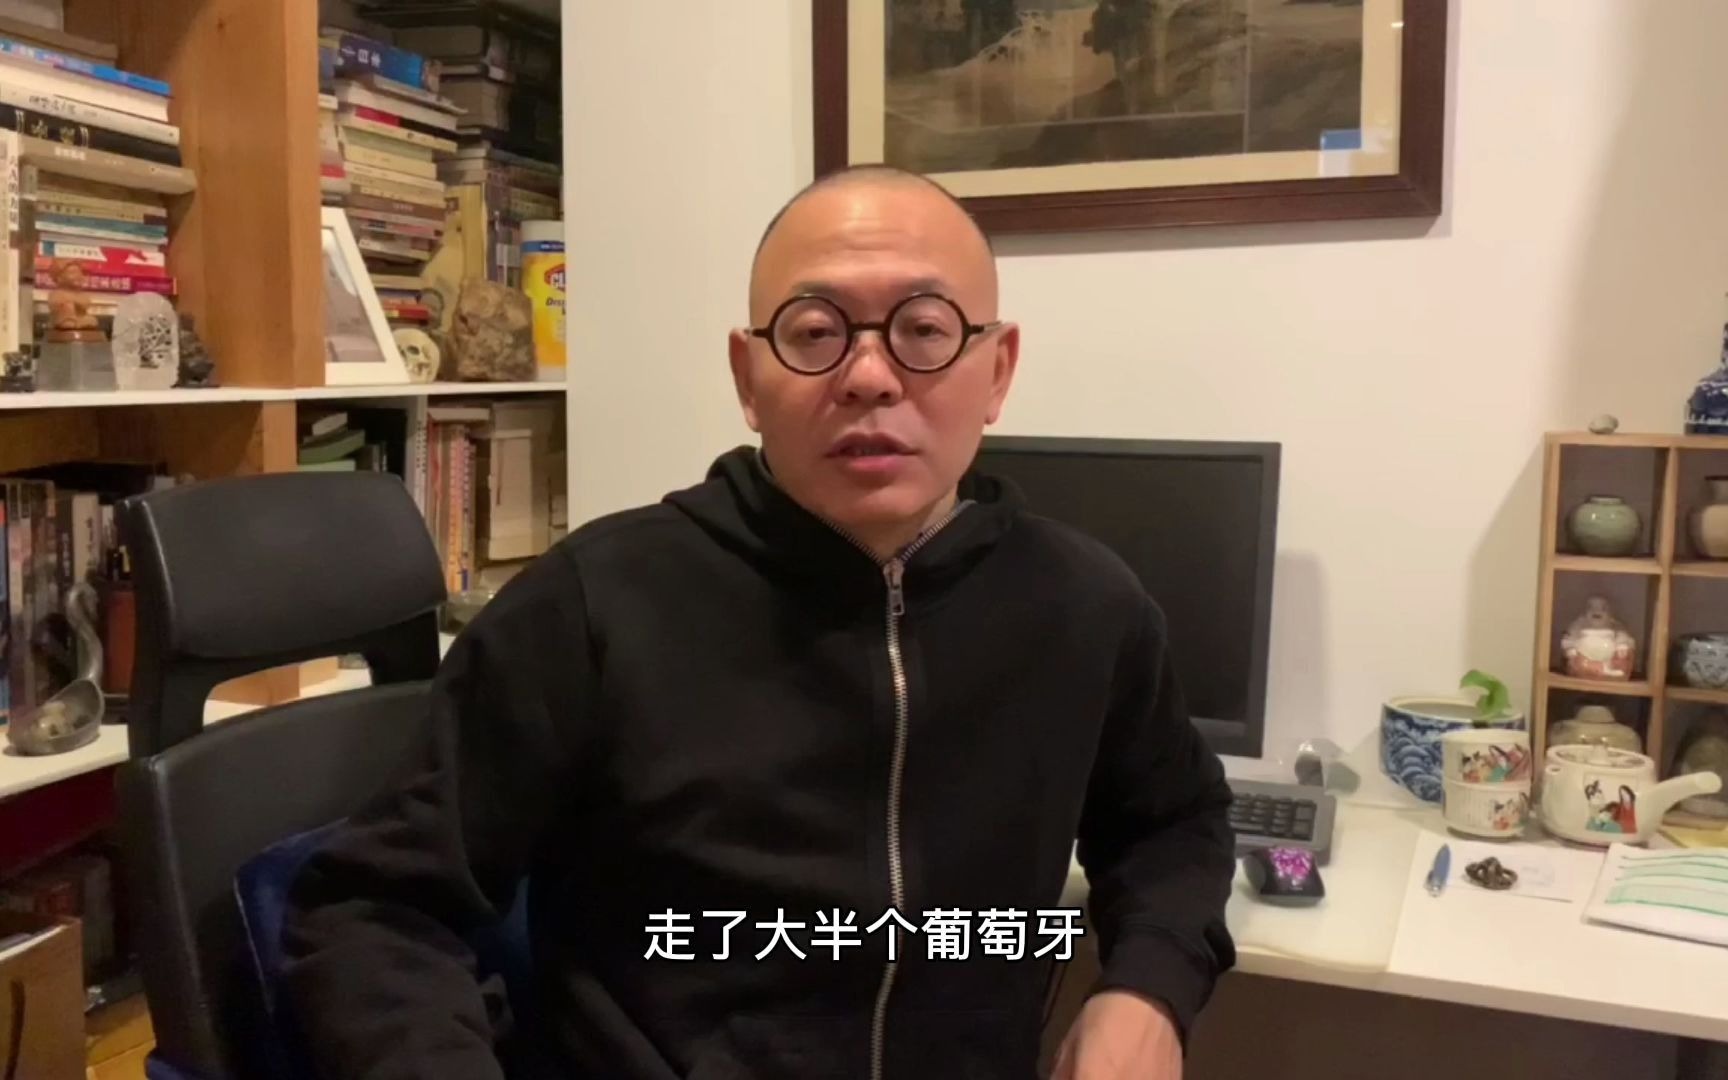 导演刘军卫 讲述15年前拍摄时的故事